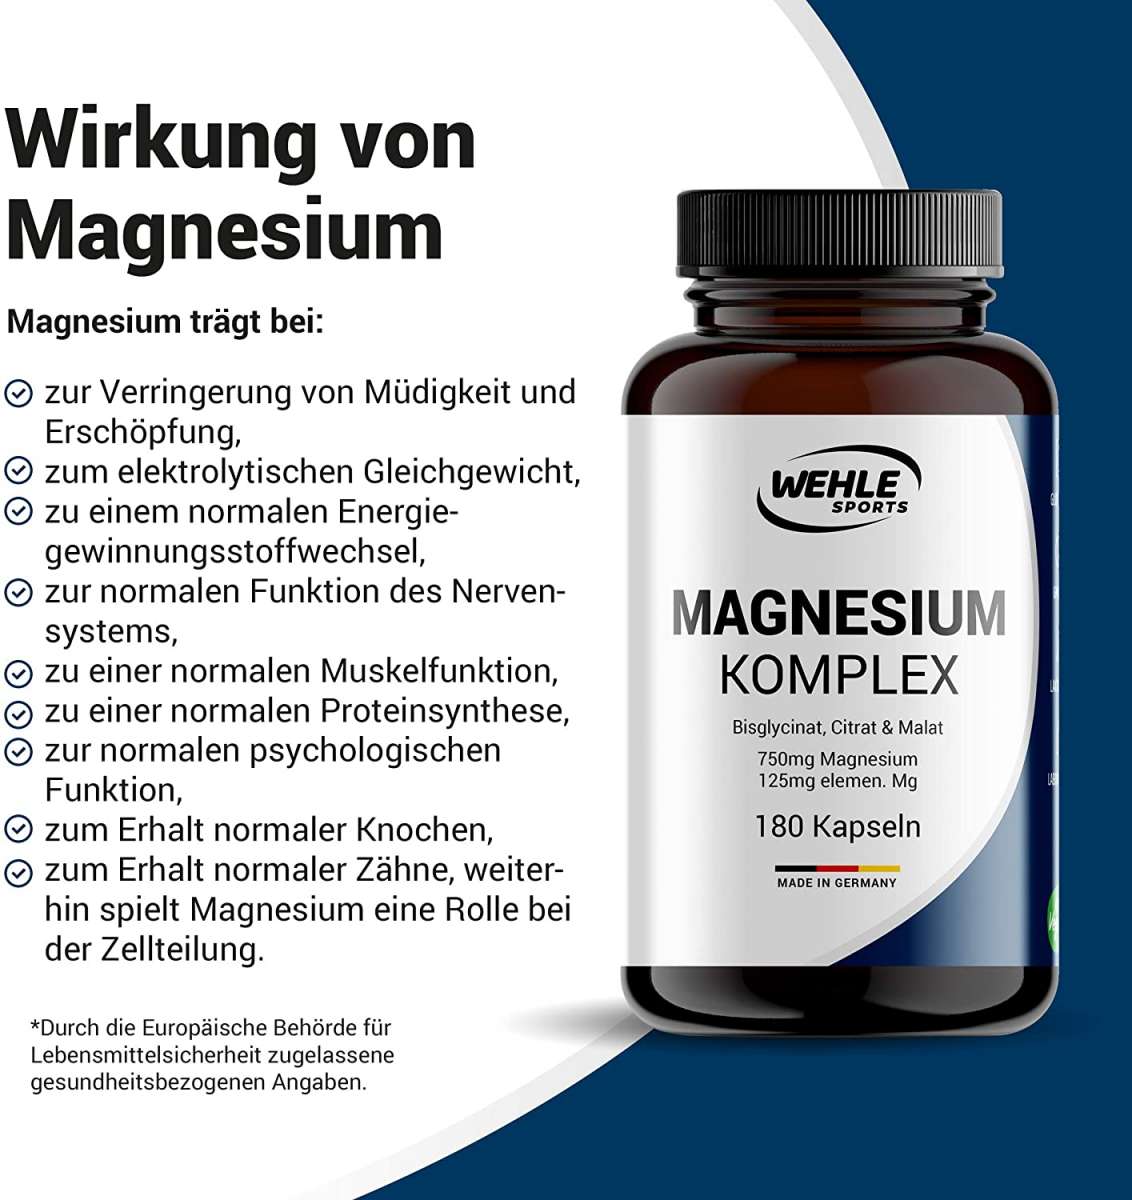 Magnesium Komplex hochdosiert mit Bisglycinat, Malat, Citrat